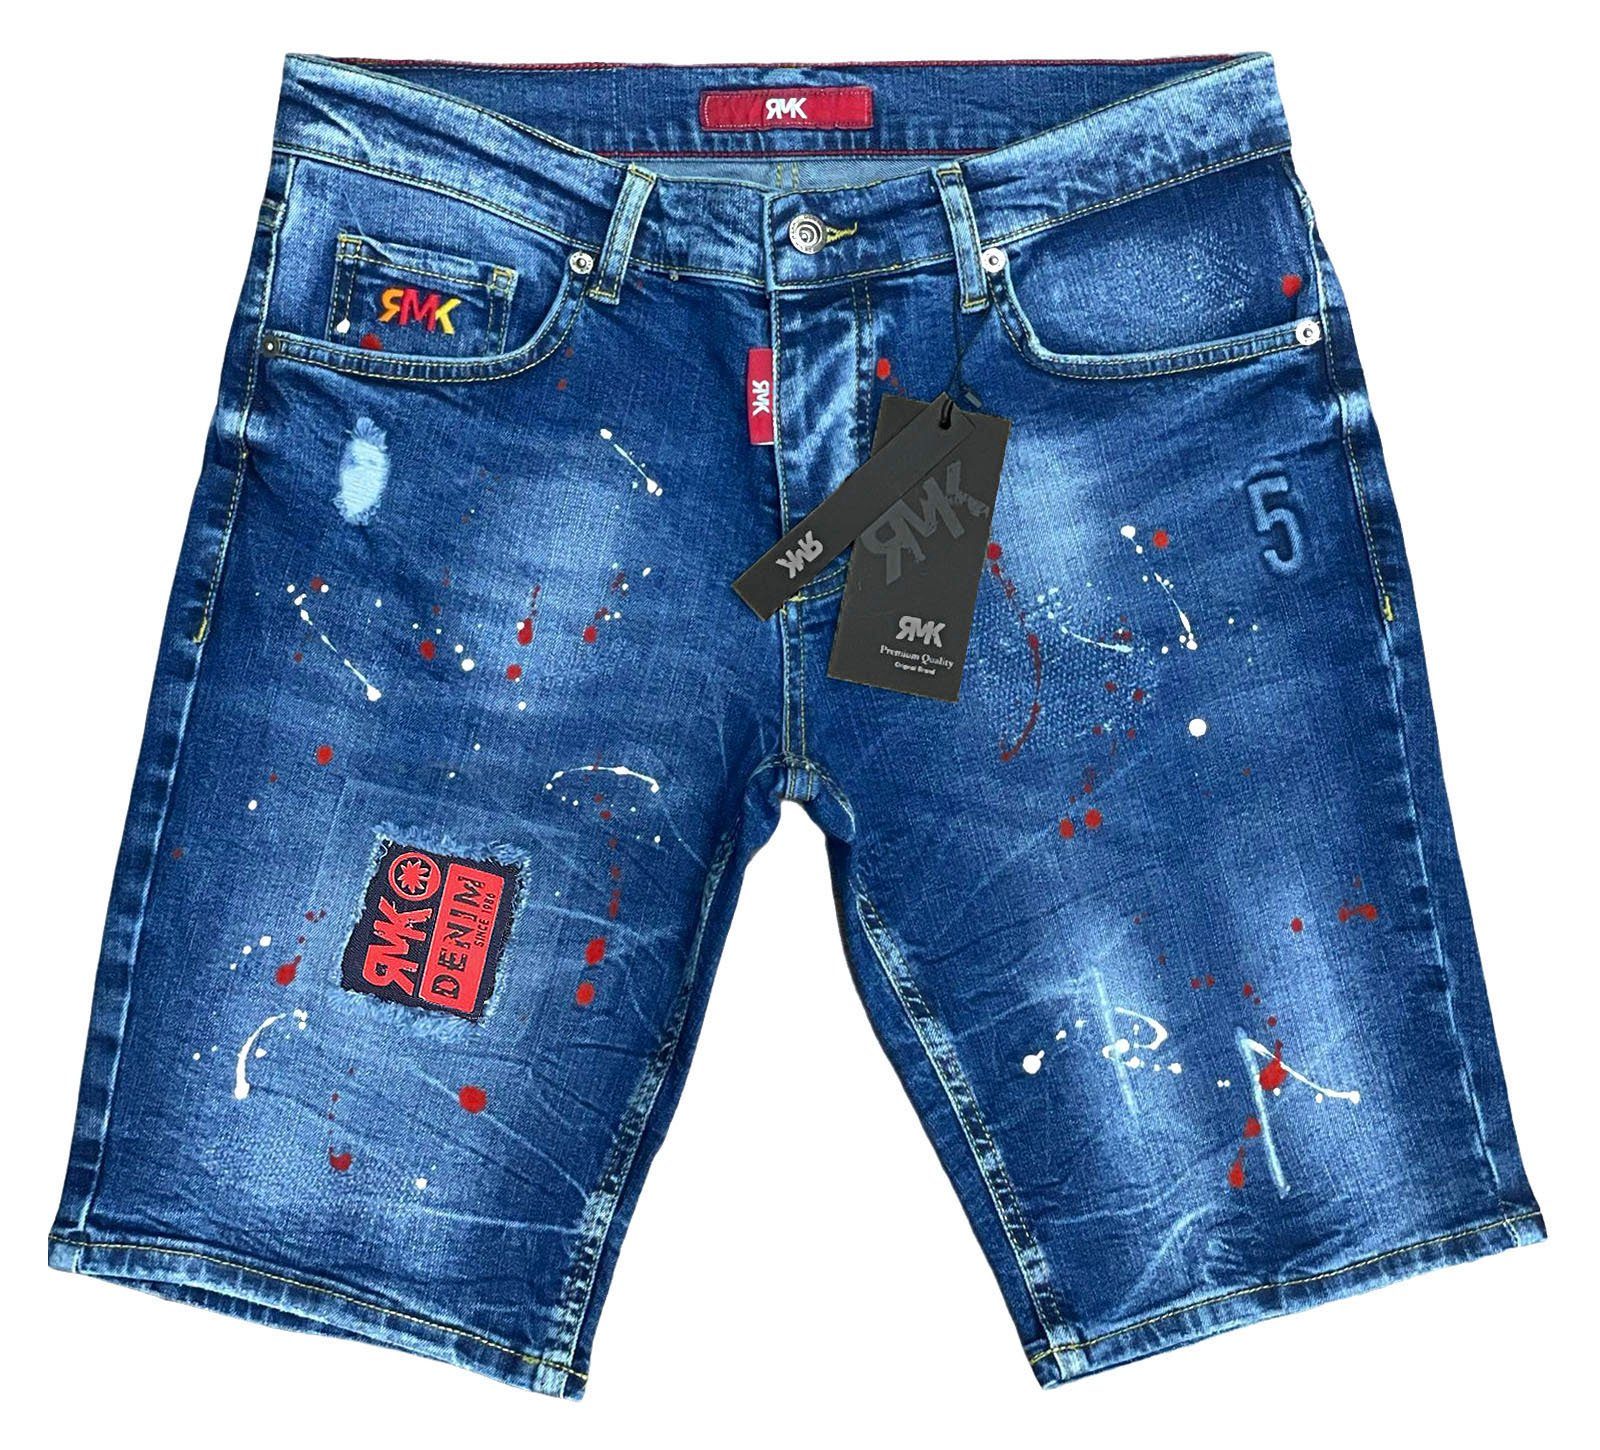 Farbspritzern RMK 5 short Blue Jeansshorts Jeans Pocket mit